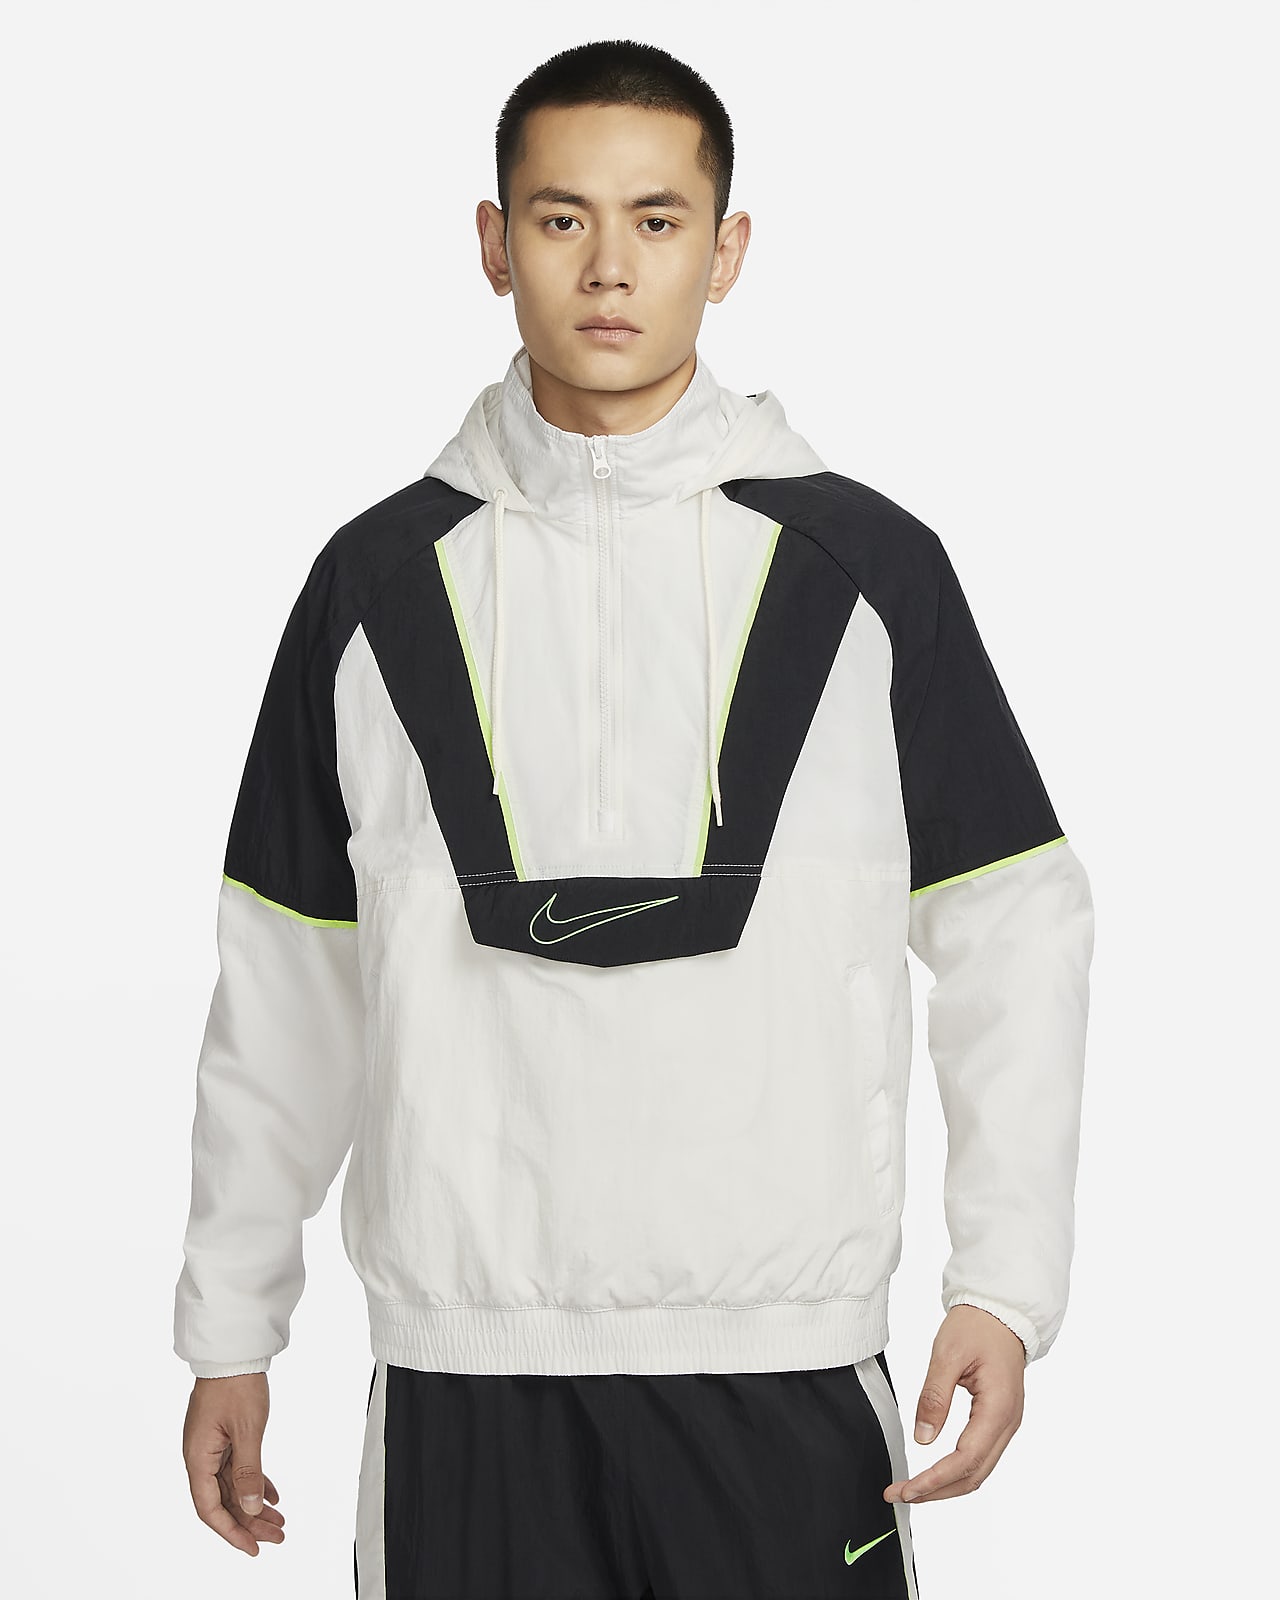 Nike Men's Woven Basketball Jacket